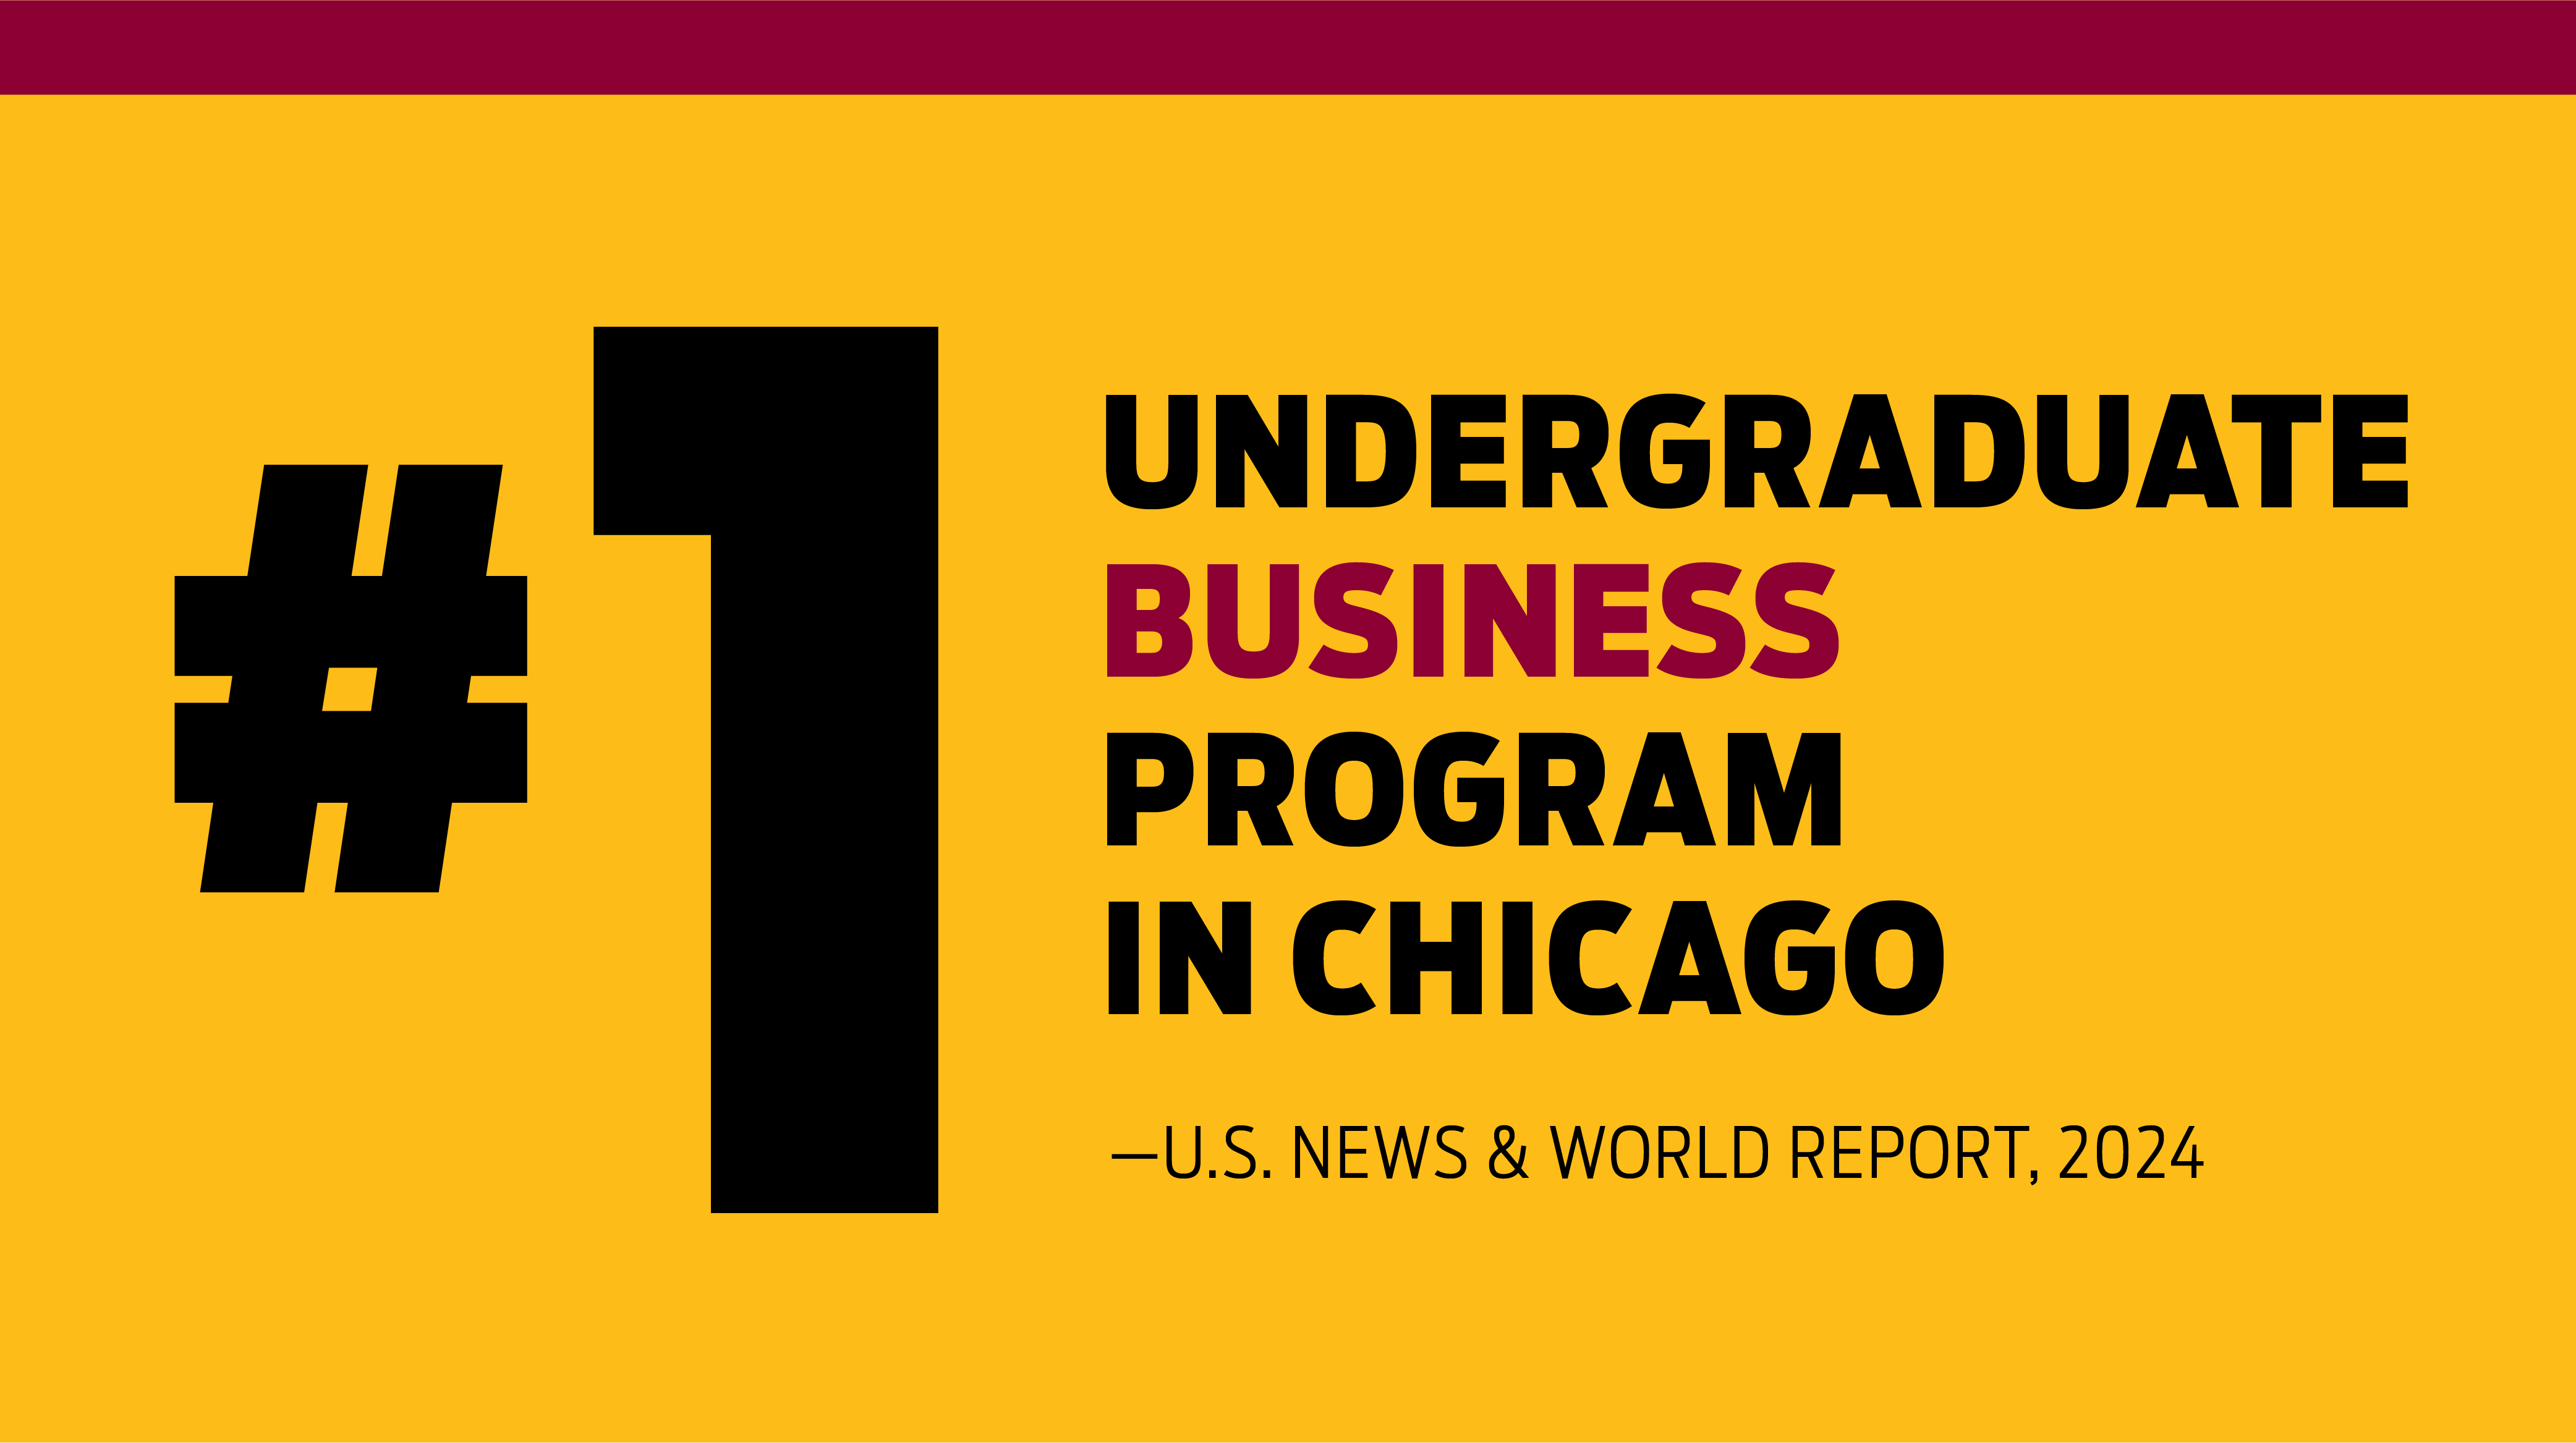 #1 Undergraduate Business Program in Chicago